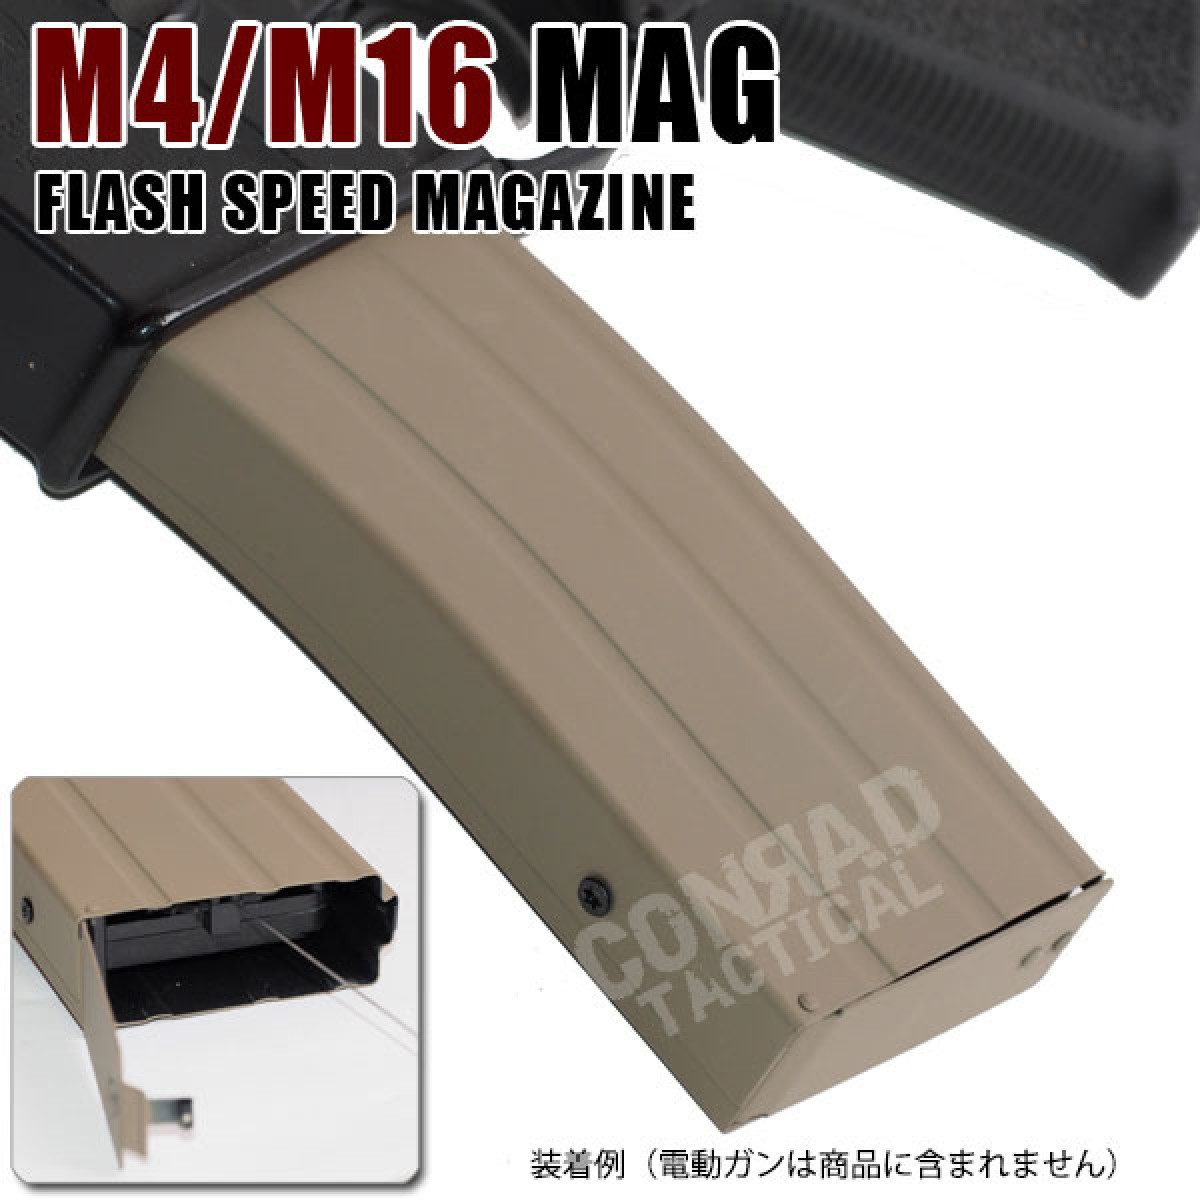 M4/M16 用 多弾装フラッシュ スピード マガジン スチールシェル ワイヤー巻き上げ式